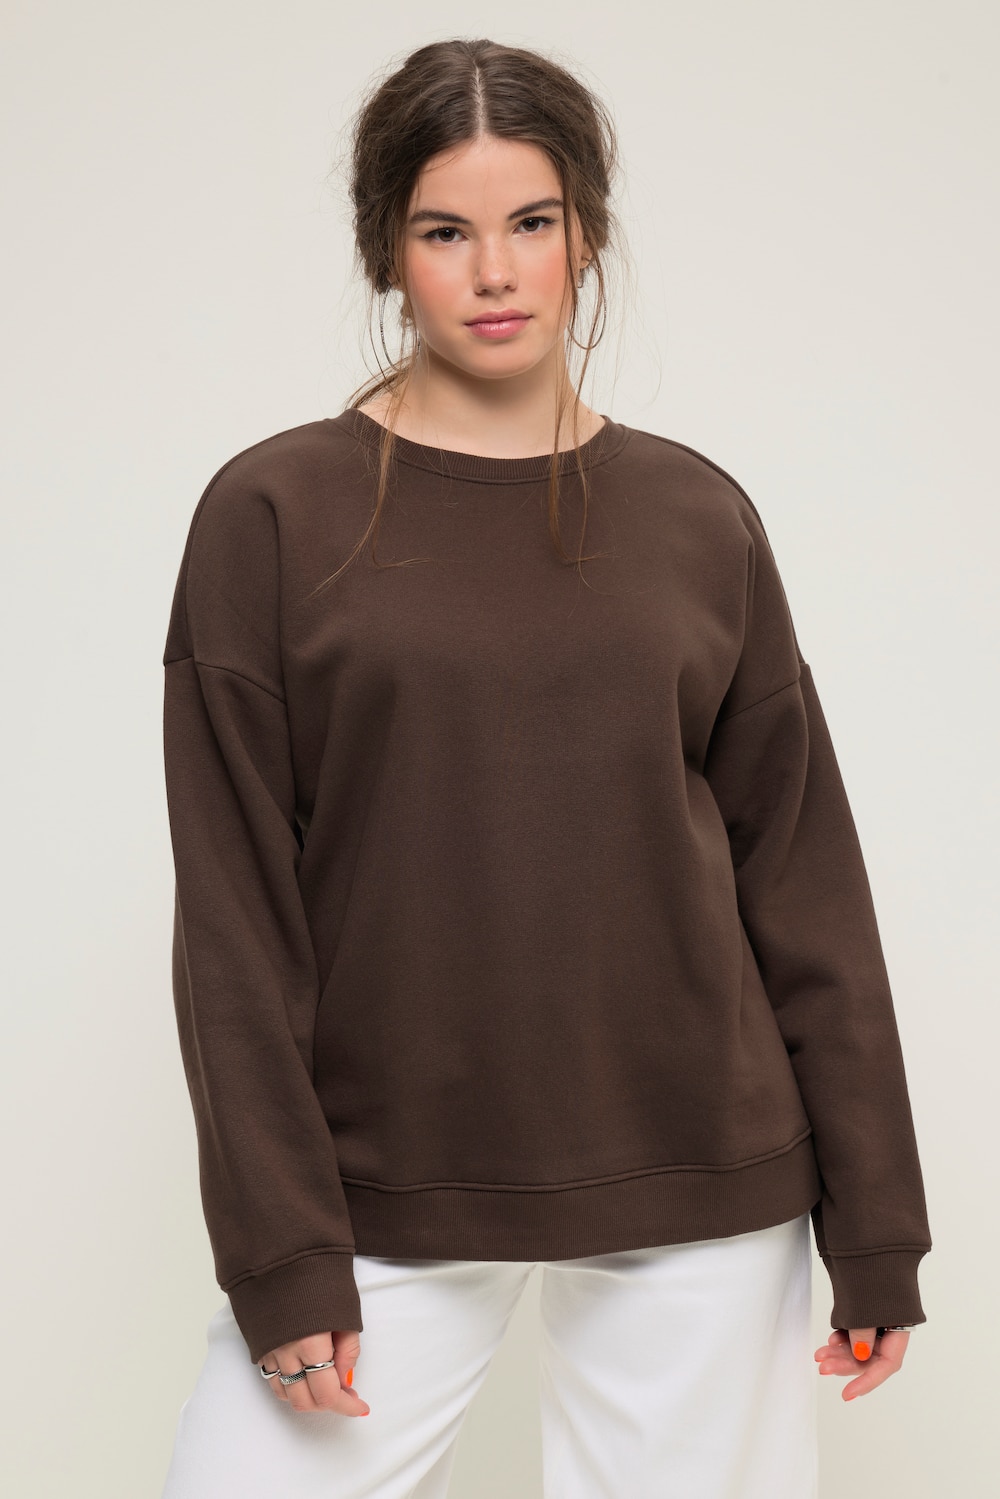 Grote Maten Sweatshirt, Dames, bruin, Maat: 46/48, Katoen/Polyester, Studio Untold